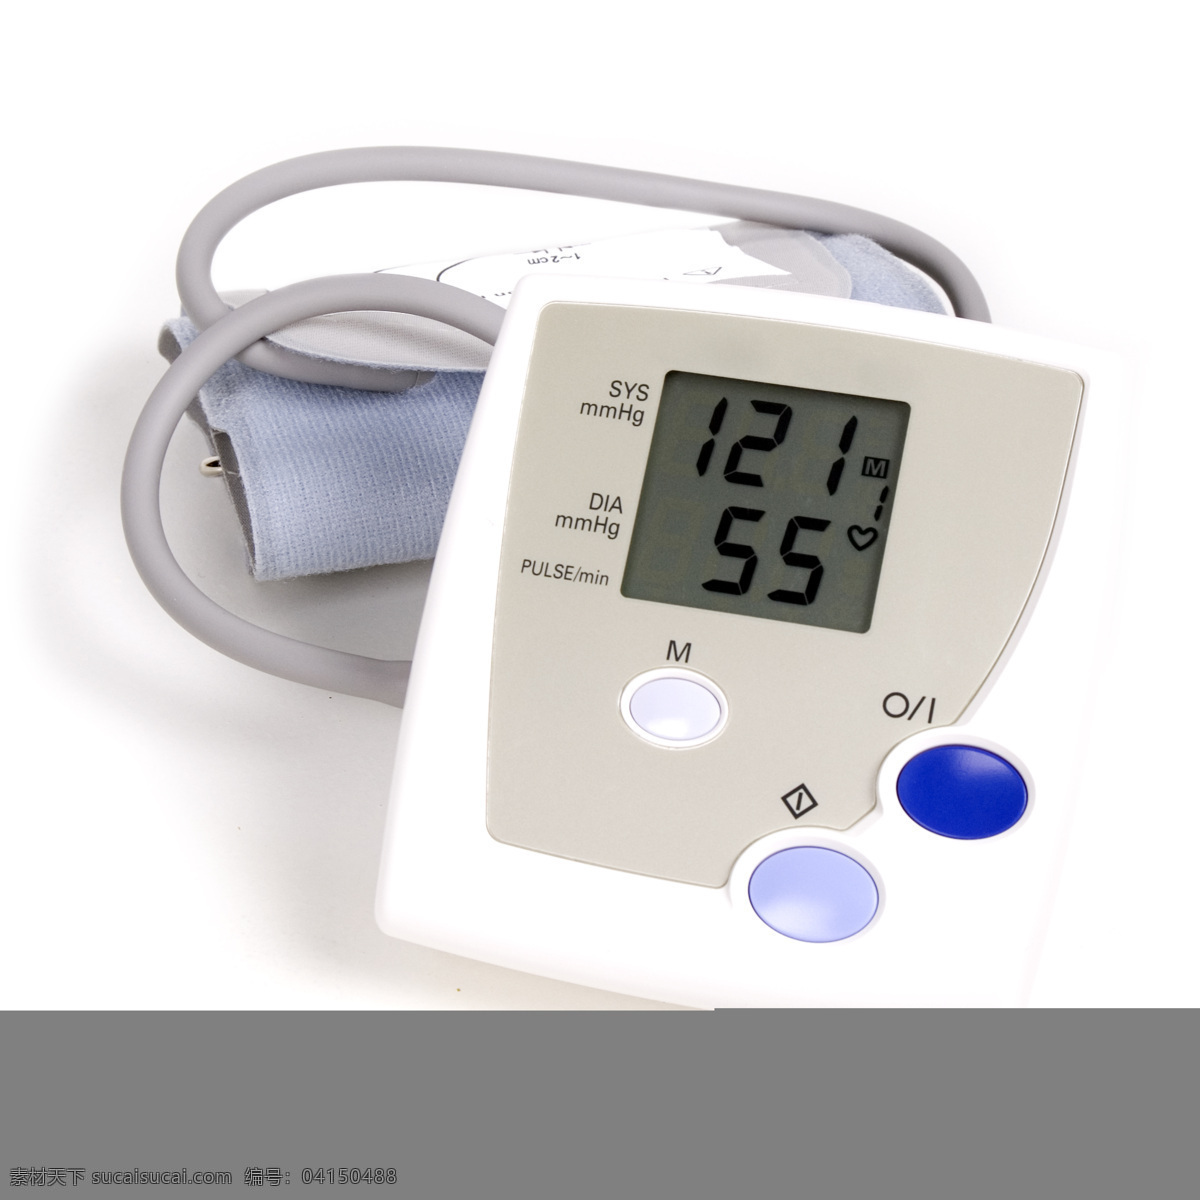 血压仪 血压 医疗护理 现代科技 高血压 低血压 量血压 測血压 医疗 医用仪器 白色